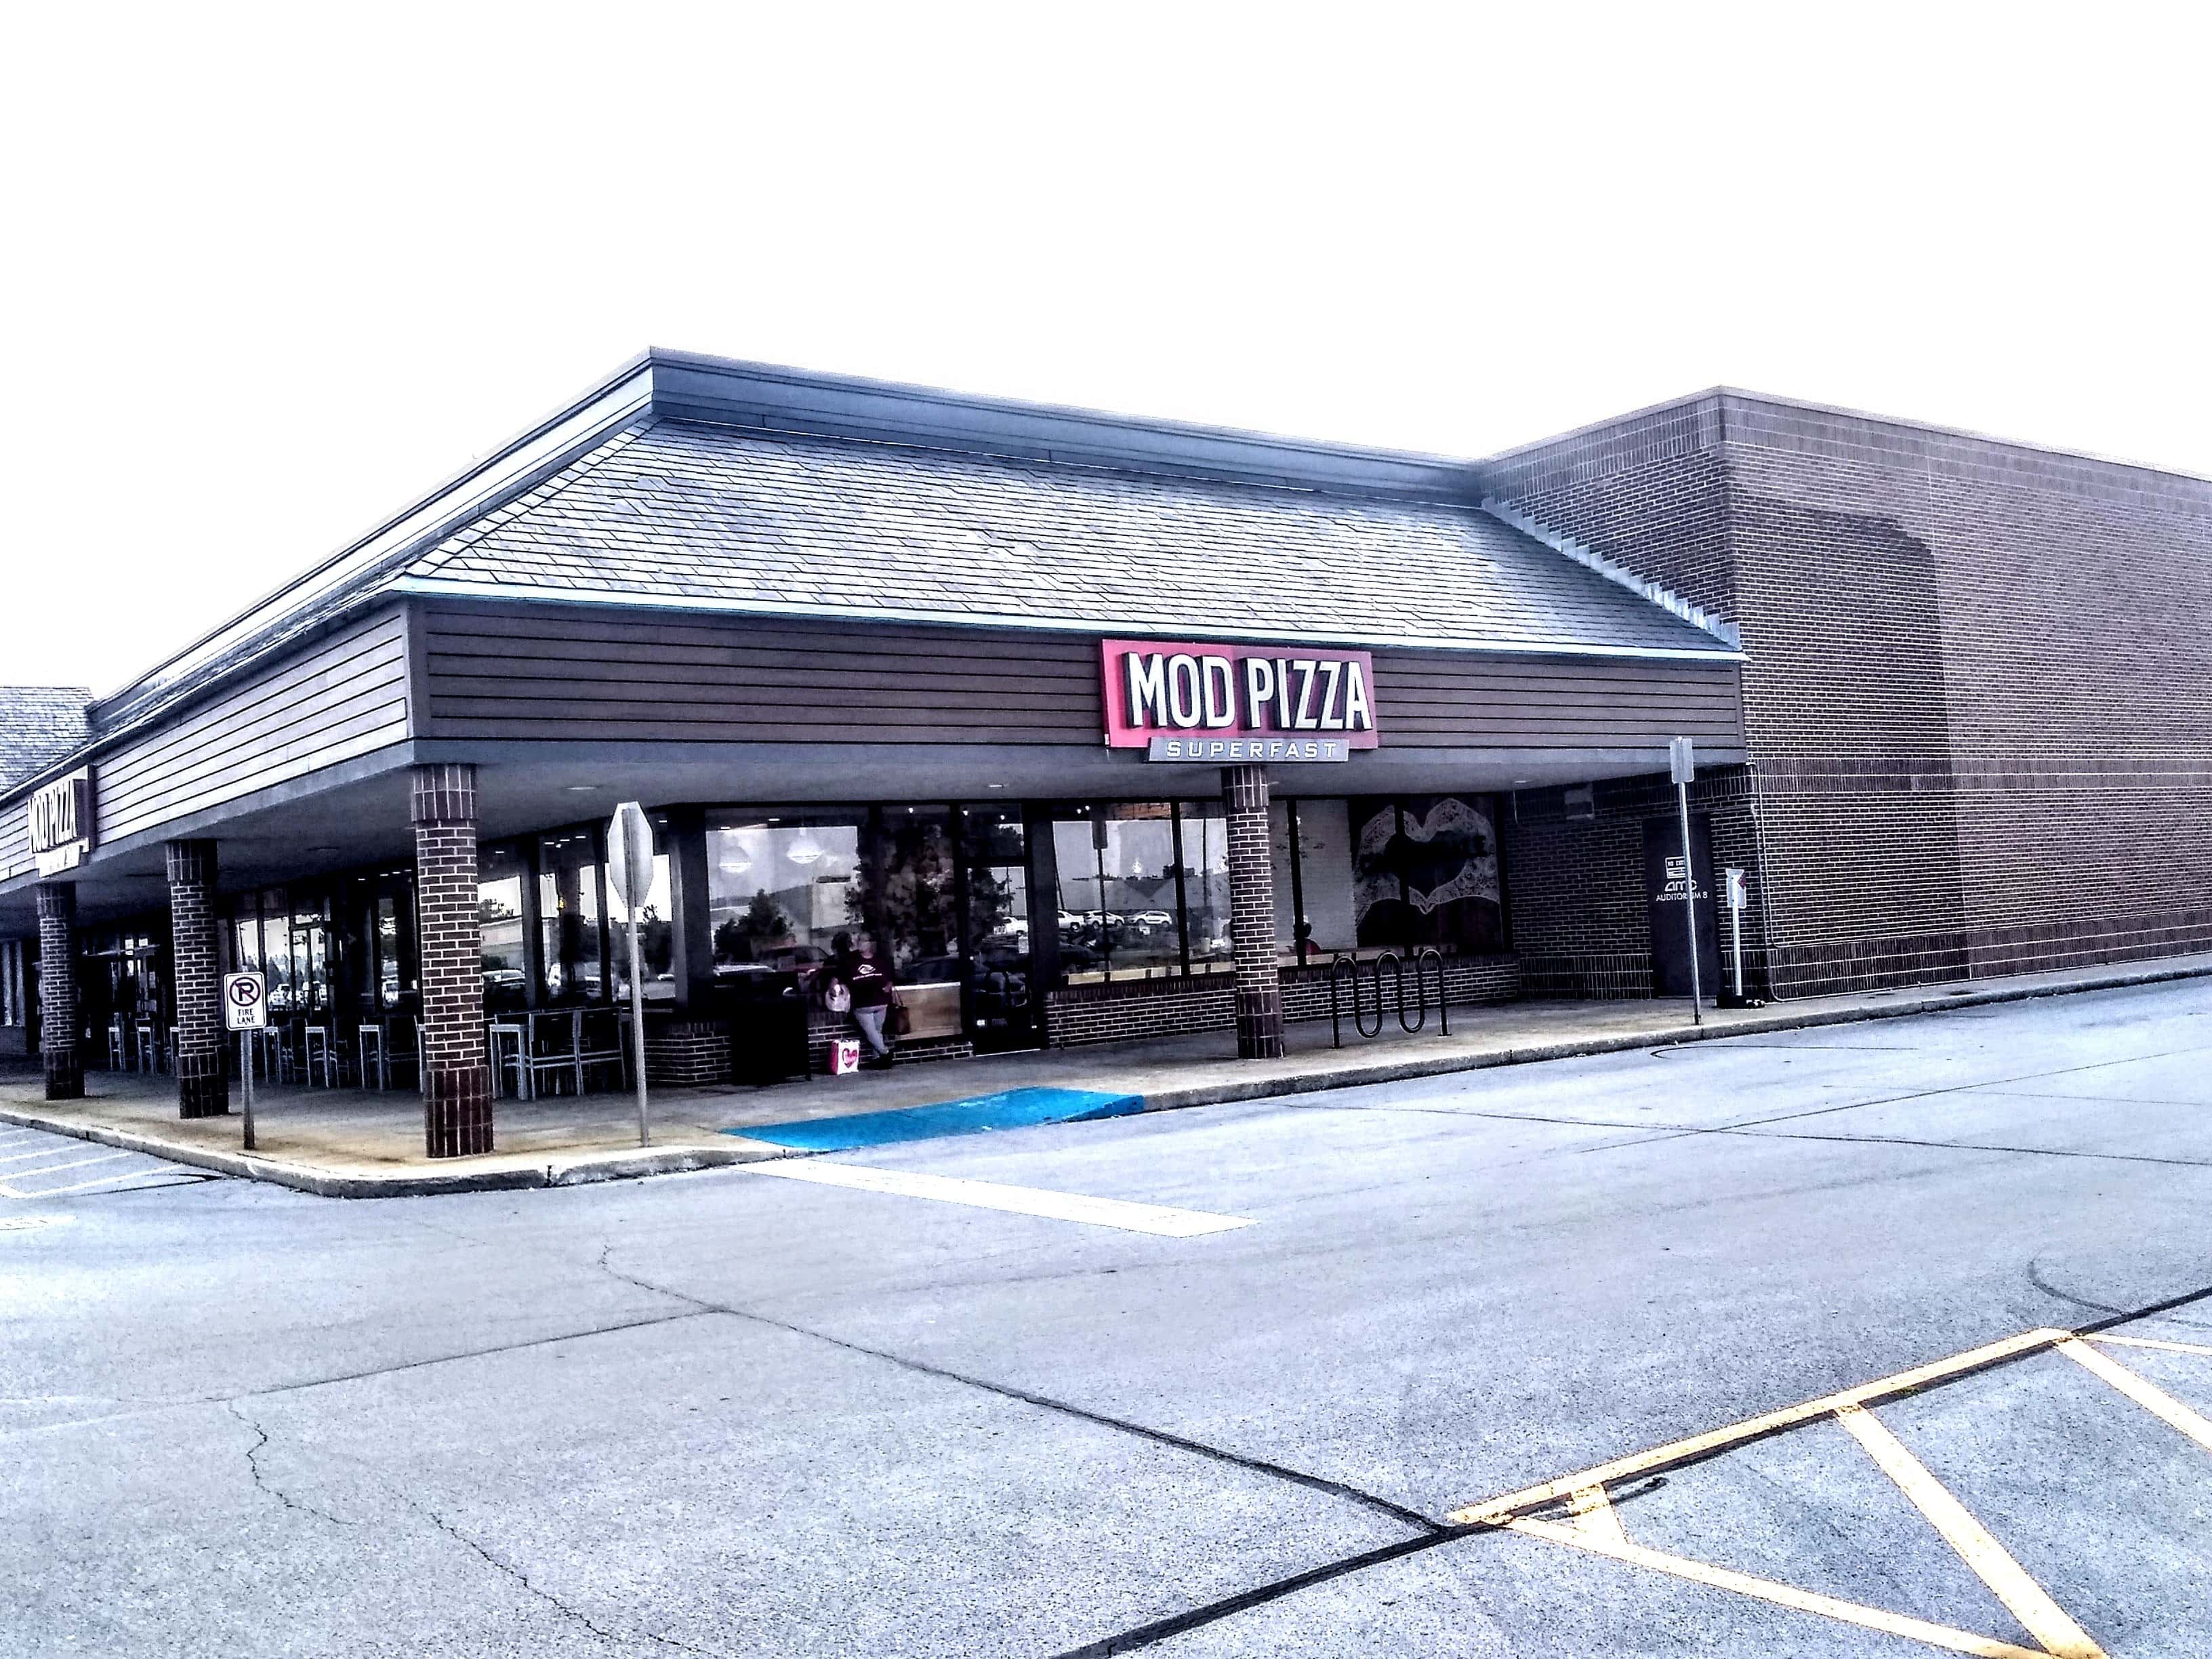 MOD Pizza - Carbondale (IL 62901), US, open pizzerias near me